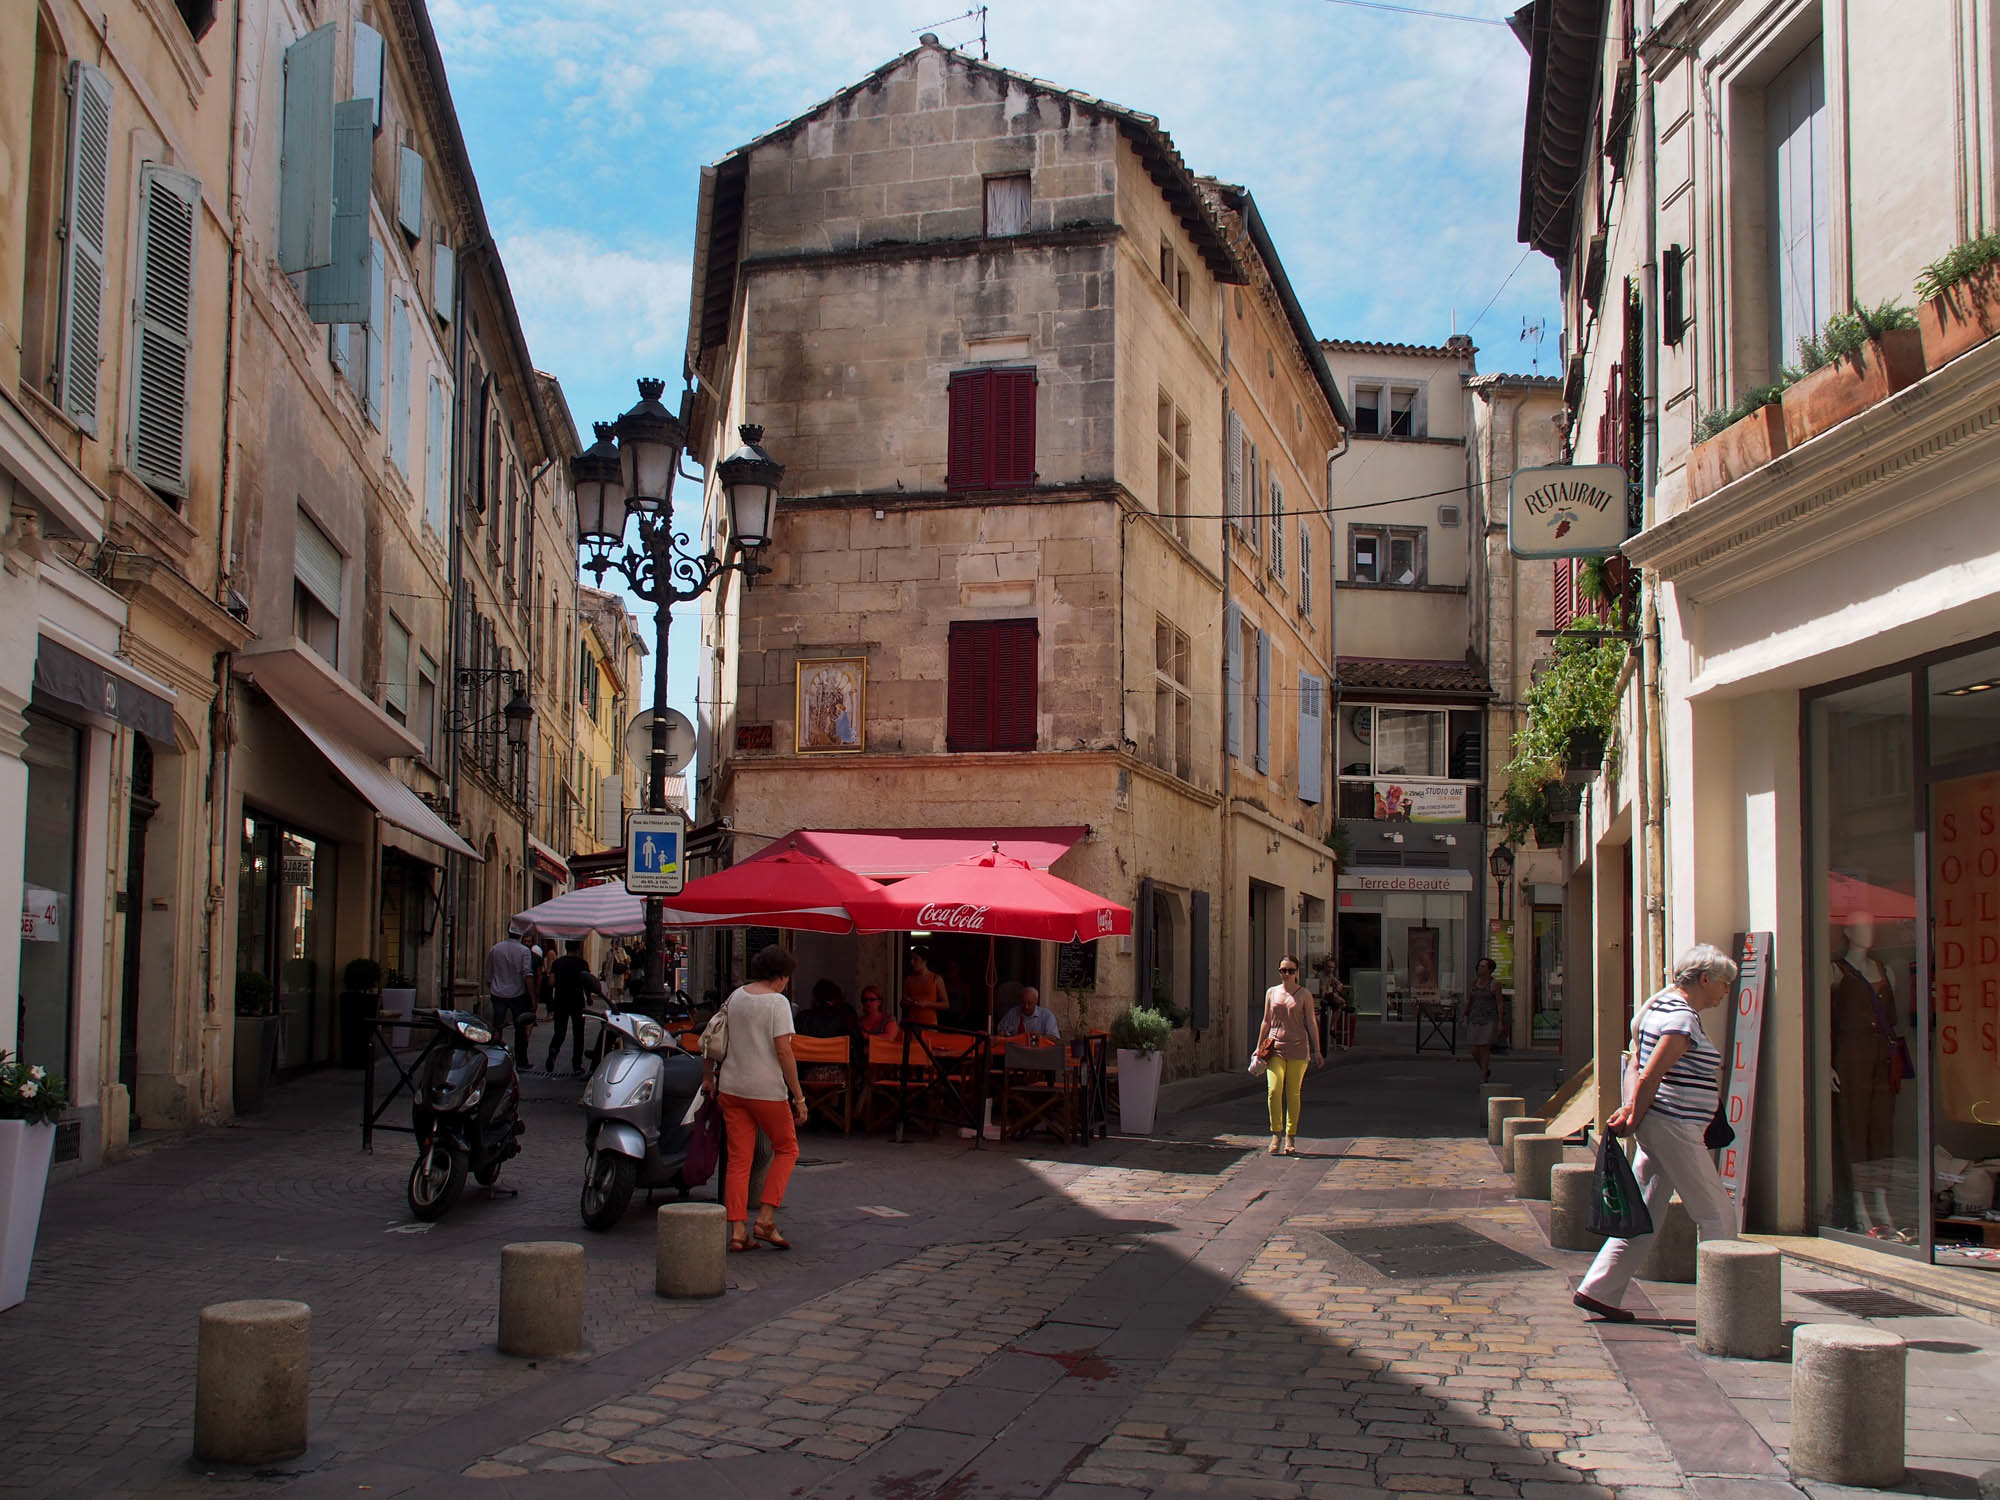 Arles; old town